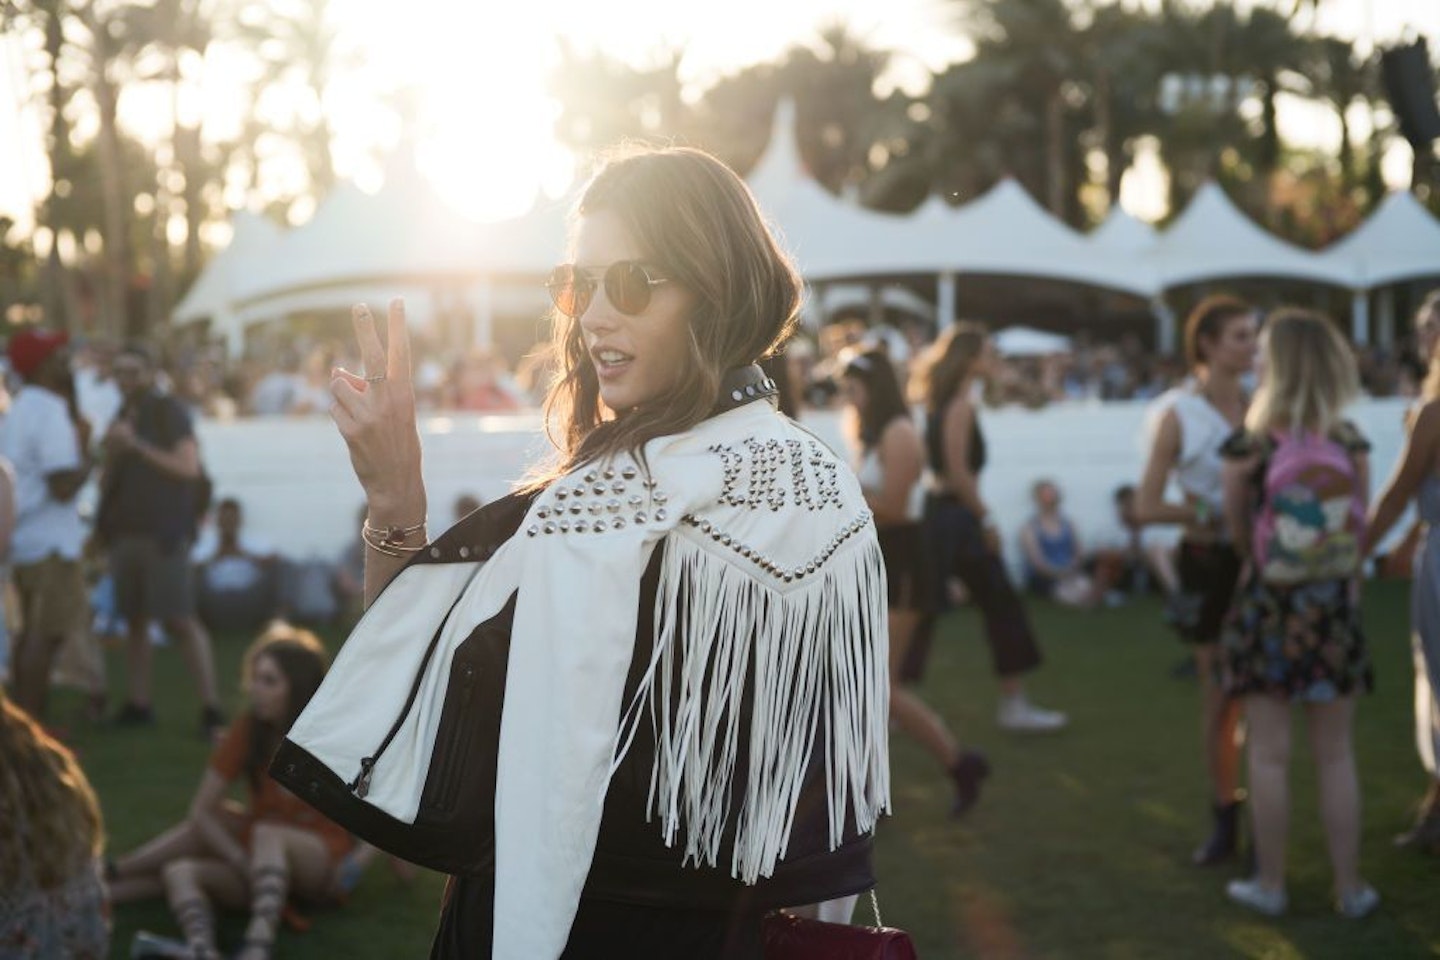 Alessandra Ambrosio wears round sunglasses at Coachella festival